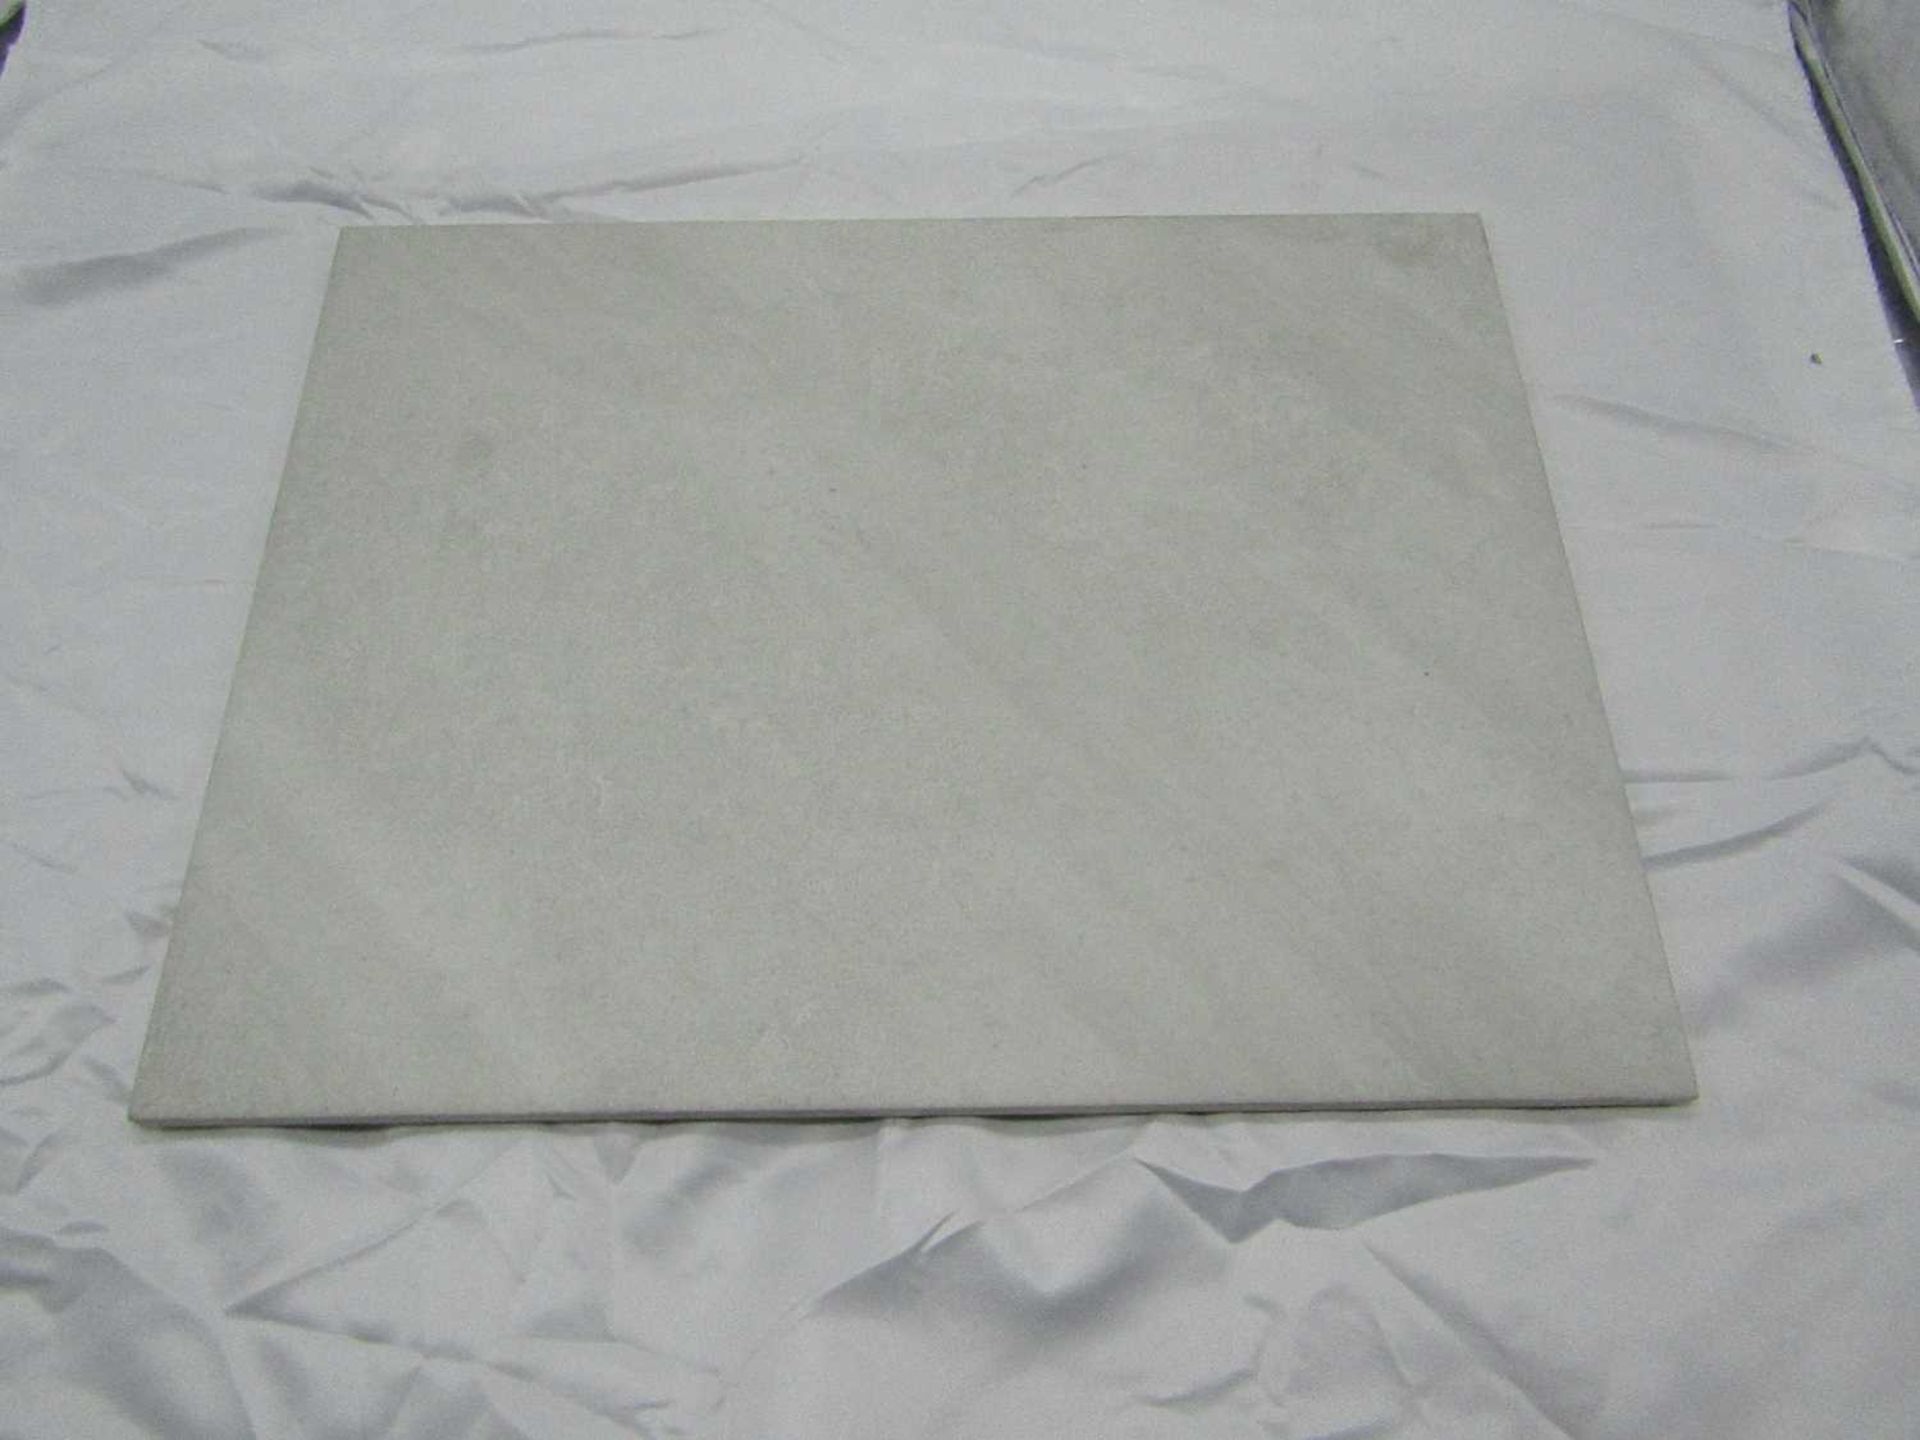 5x Packs of 10 Johnsons Tiles 360x275mm Grassmere slate grey matt wall and floor tiles, new, ref